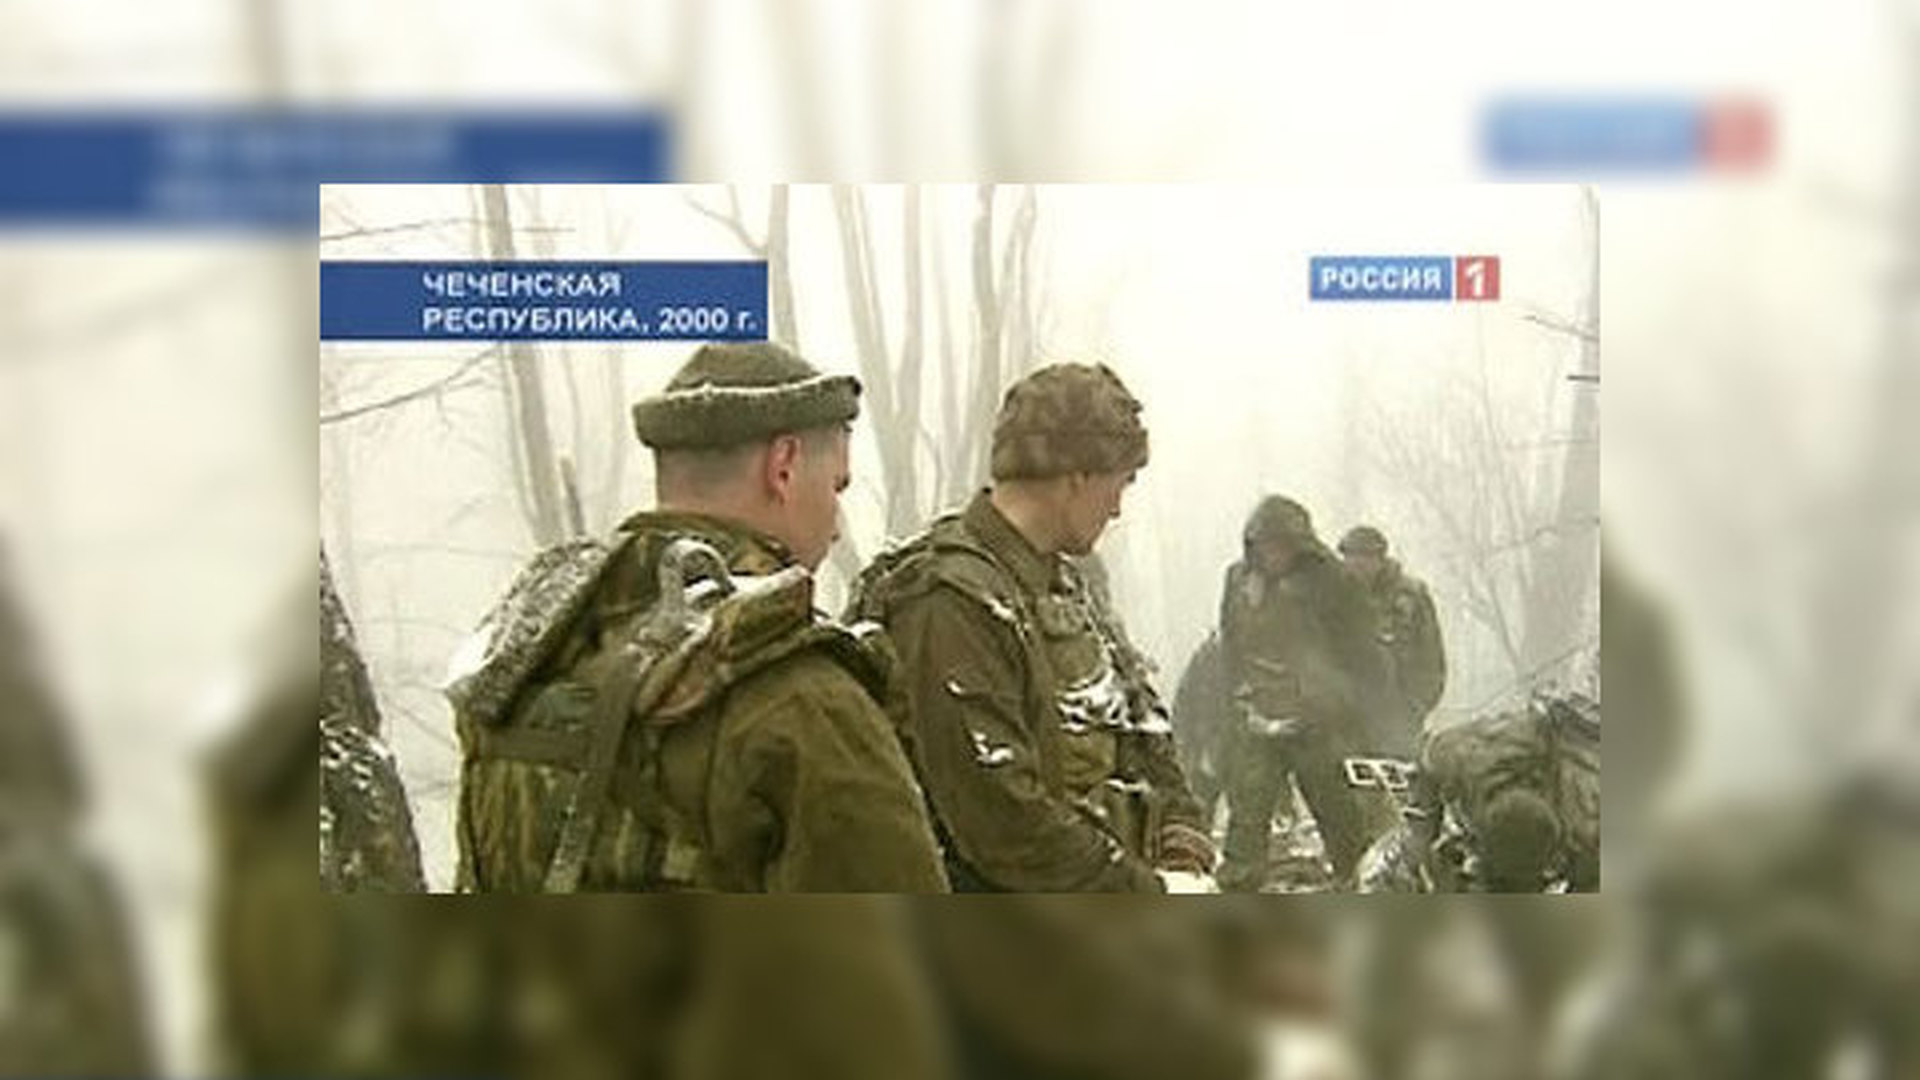 Нападении на псковских десантников в Чечне в 2000 году